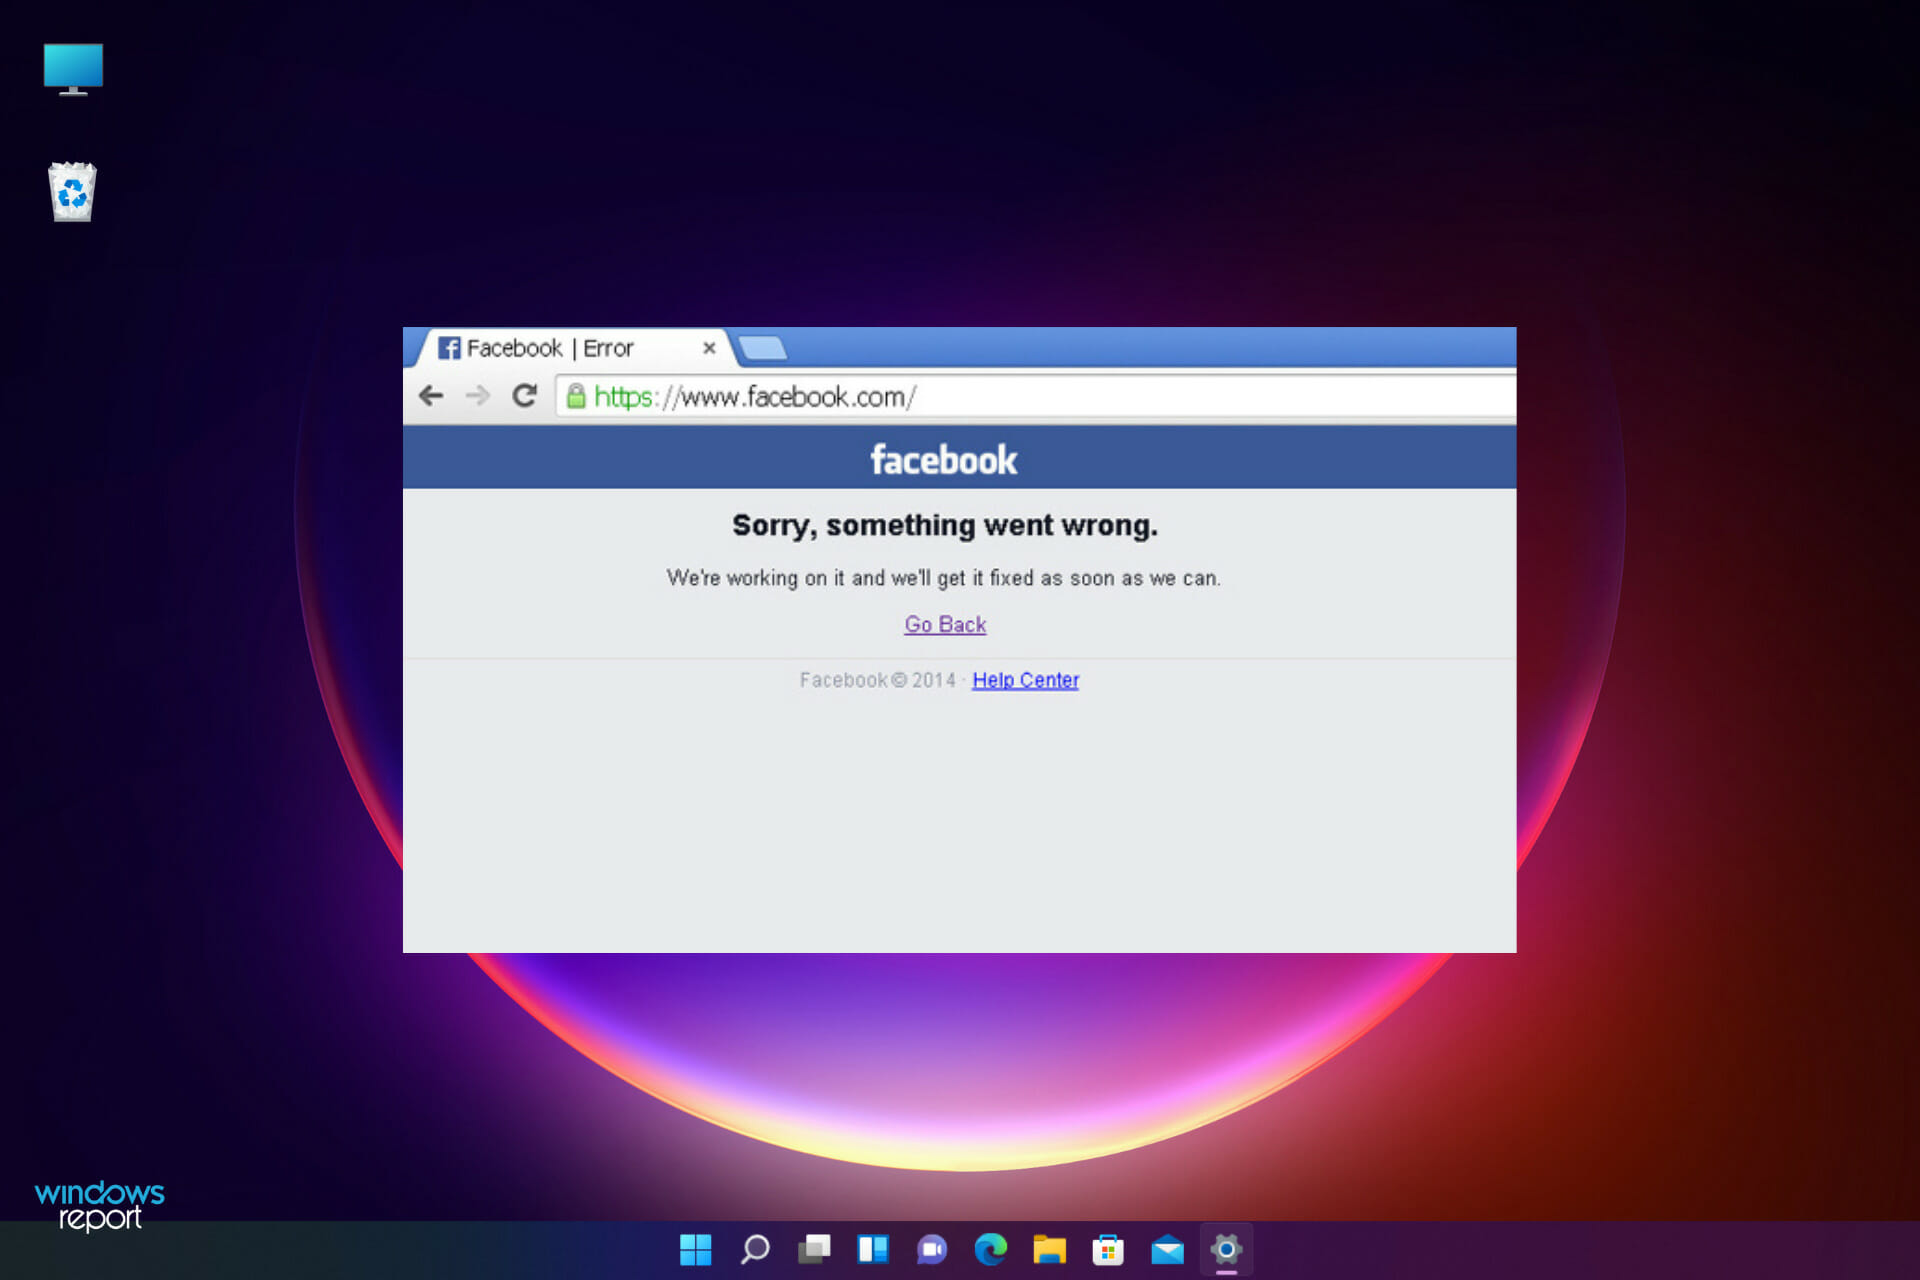 Facebook: Lo siento, algo salió mal error